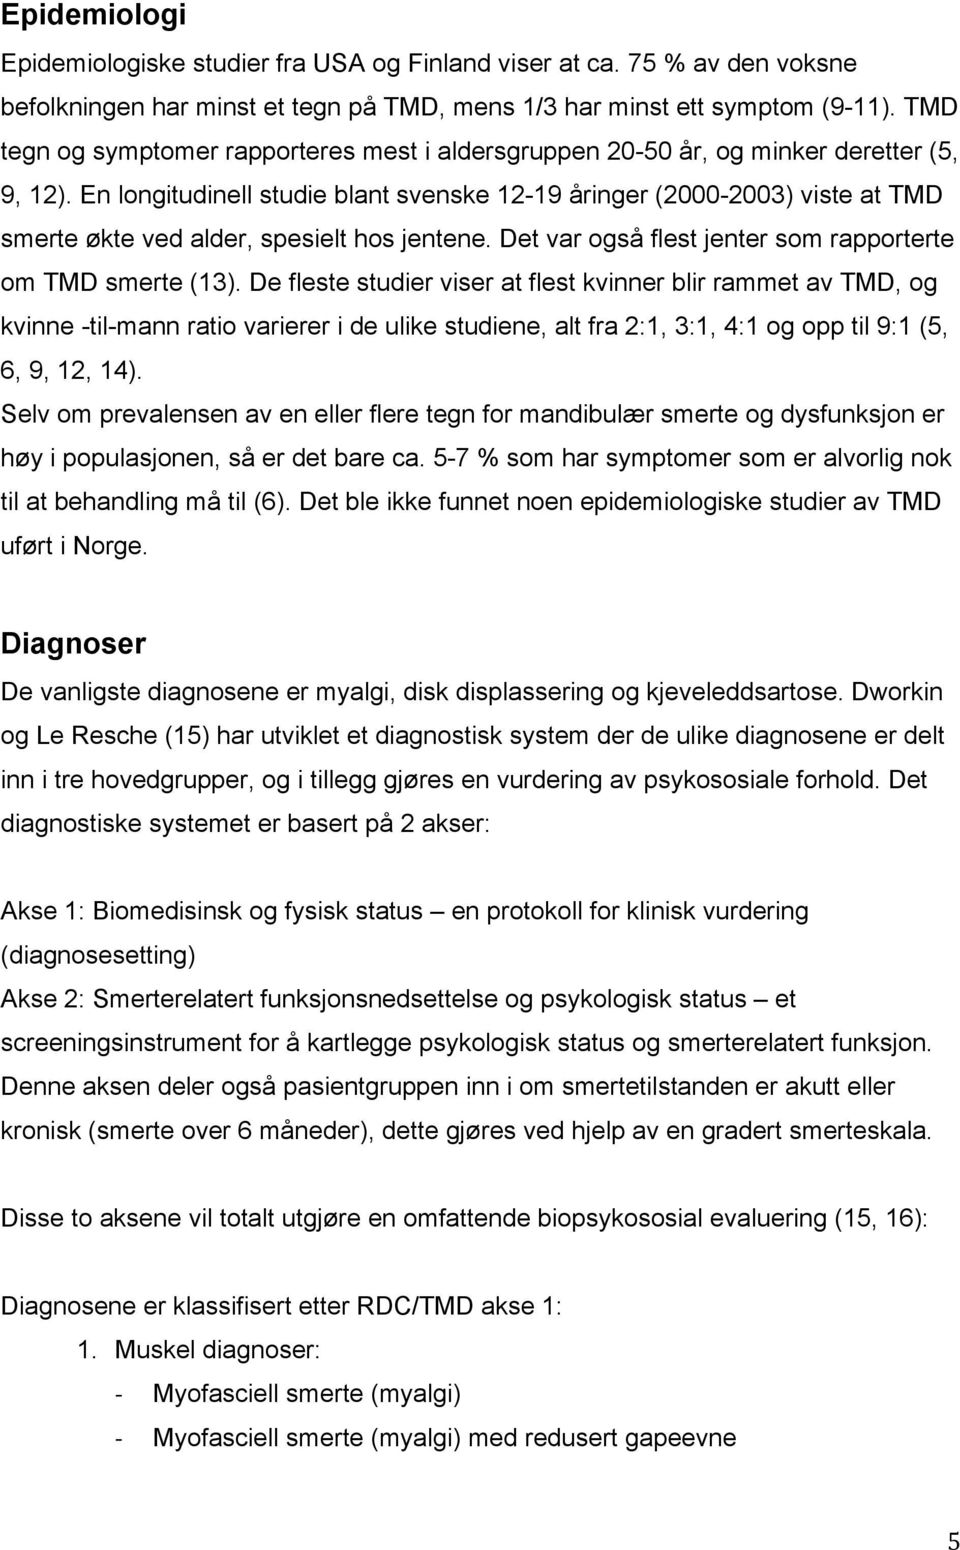 En longitudinell studie blant svenske 12-19 åringer (2000-2003) viste at TMD smerte økte ved alder, spesielt hos jentene. Det var også flest jenter som rapporterte om TMD smerte (13).